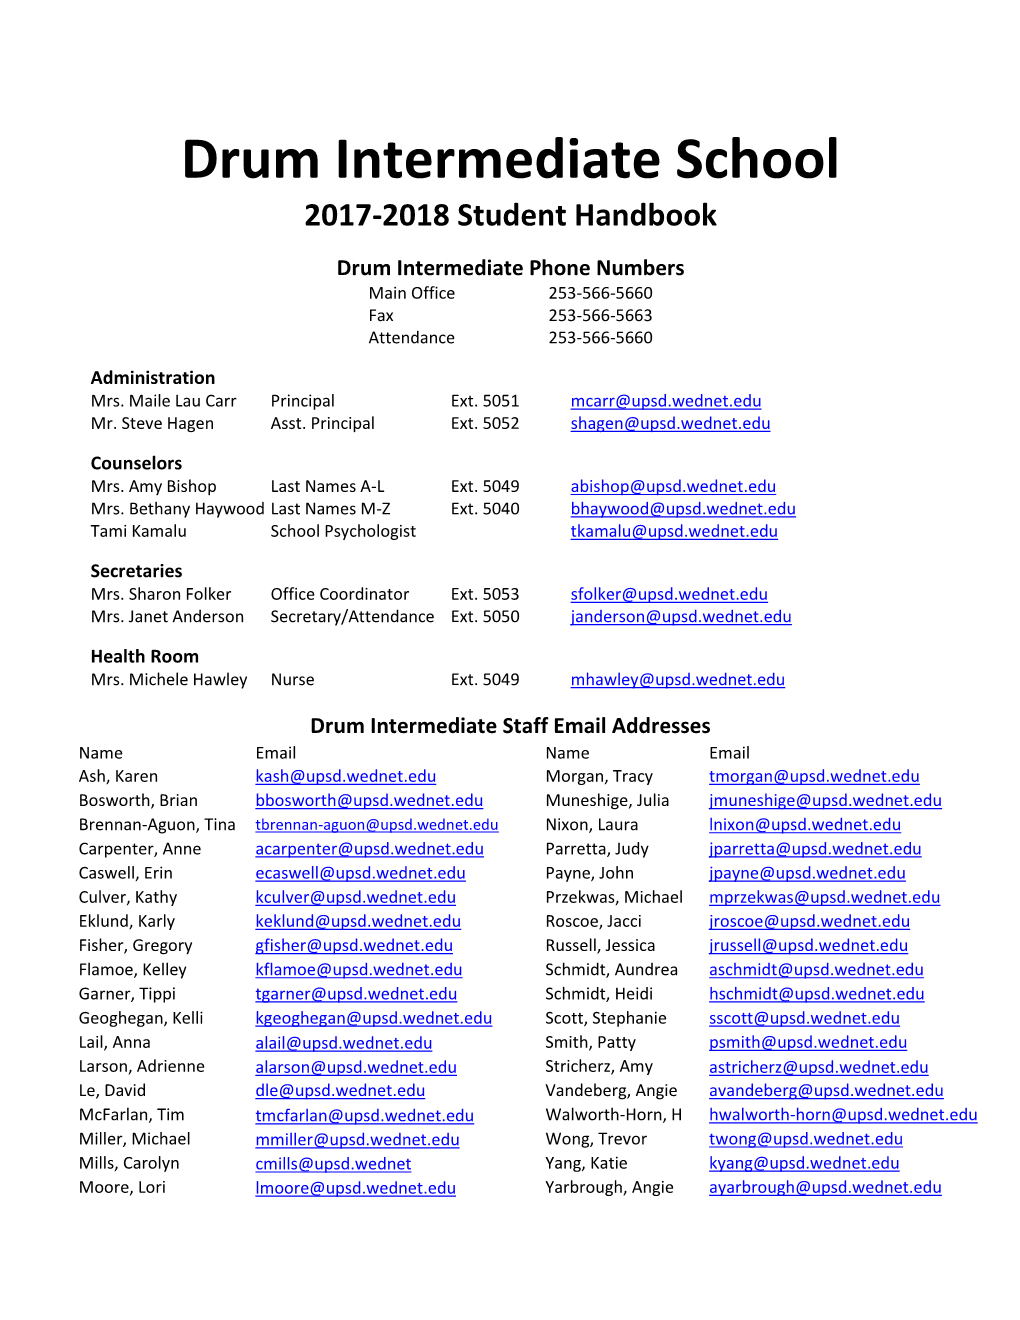 Drum Intermediate School 2017-2018 Student Handbook